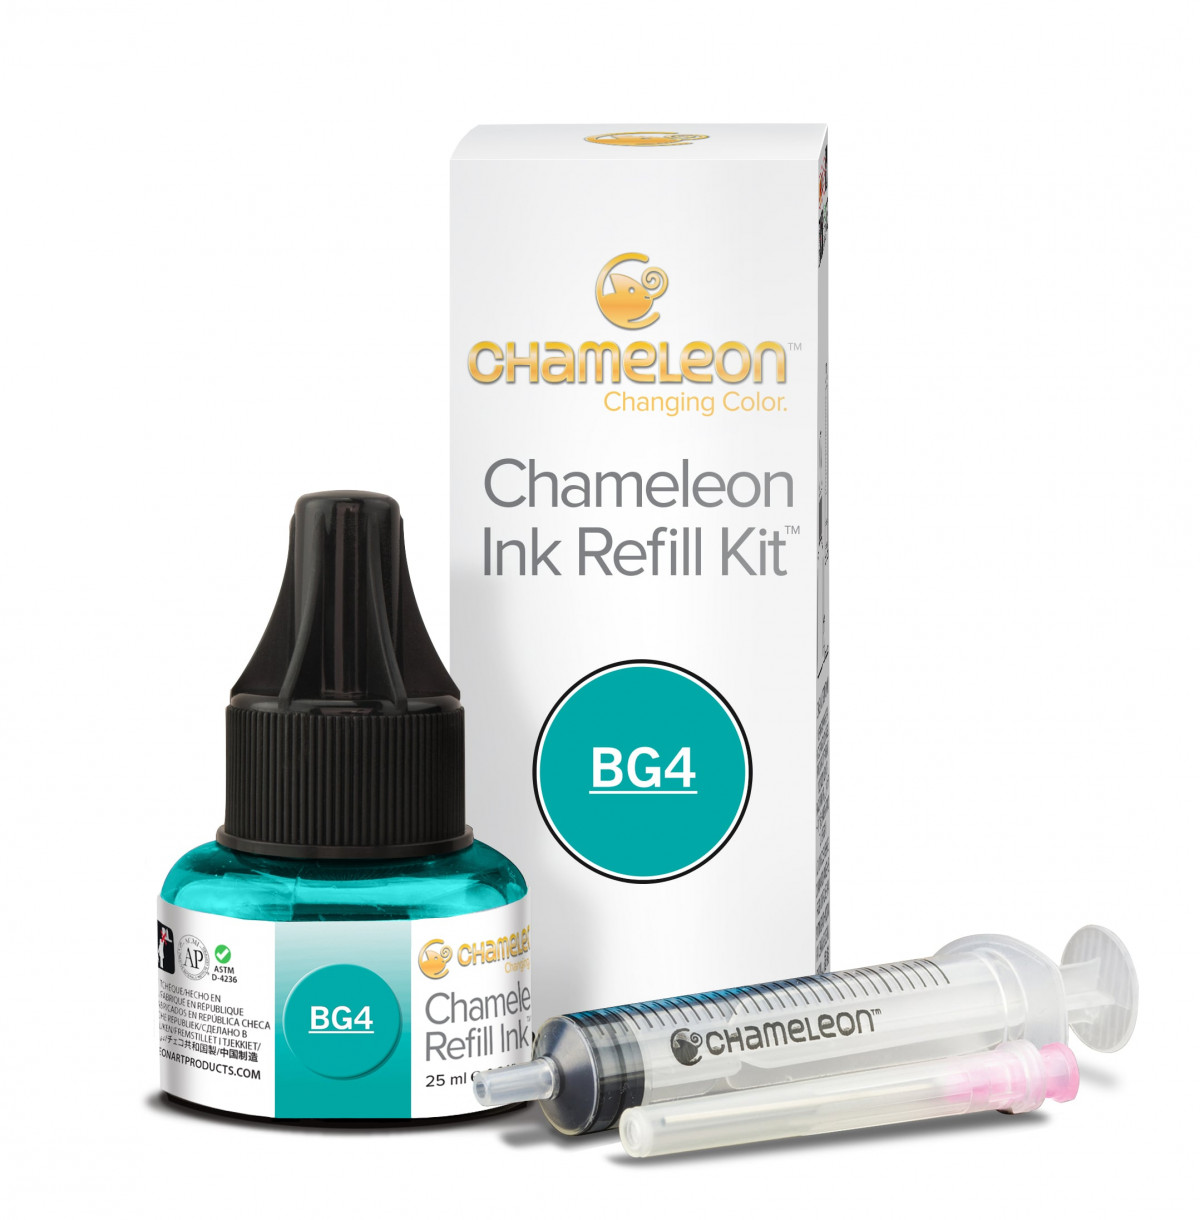 Chameleon Ink Refill Kit for Blendable Marker Pens - 25ml